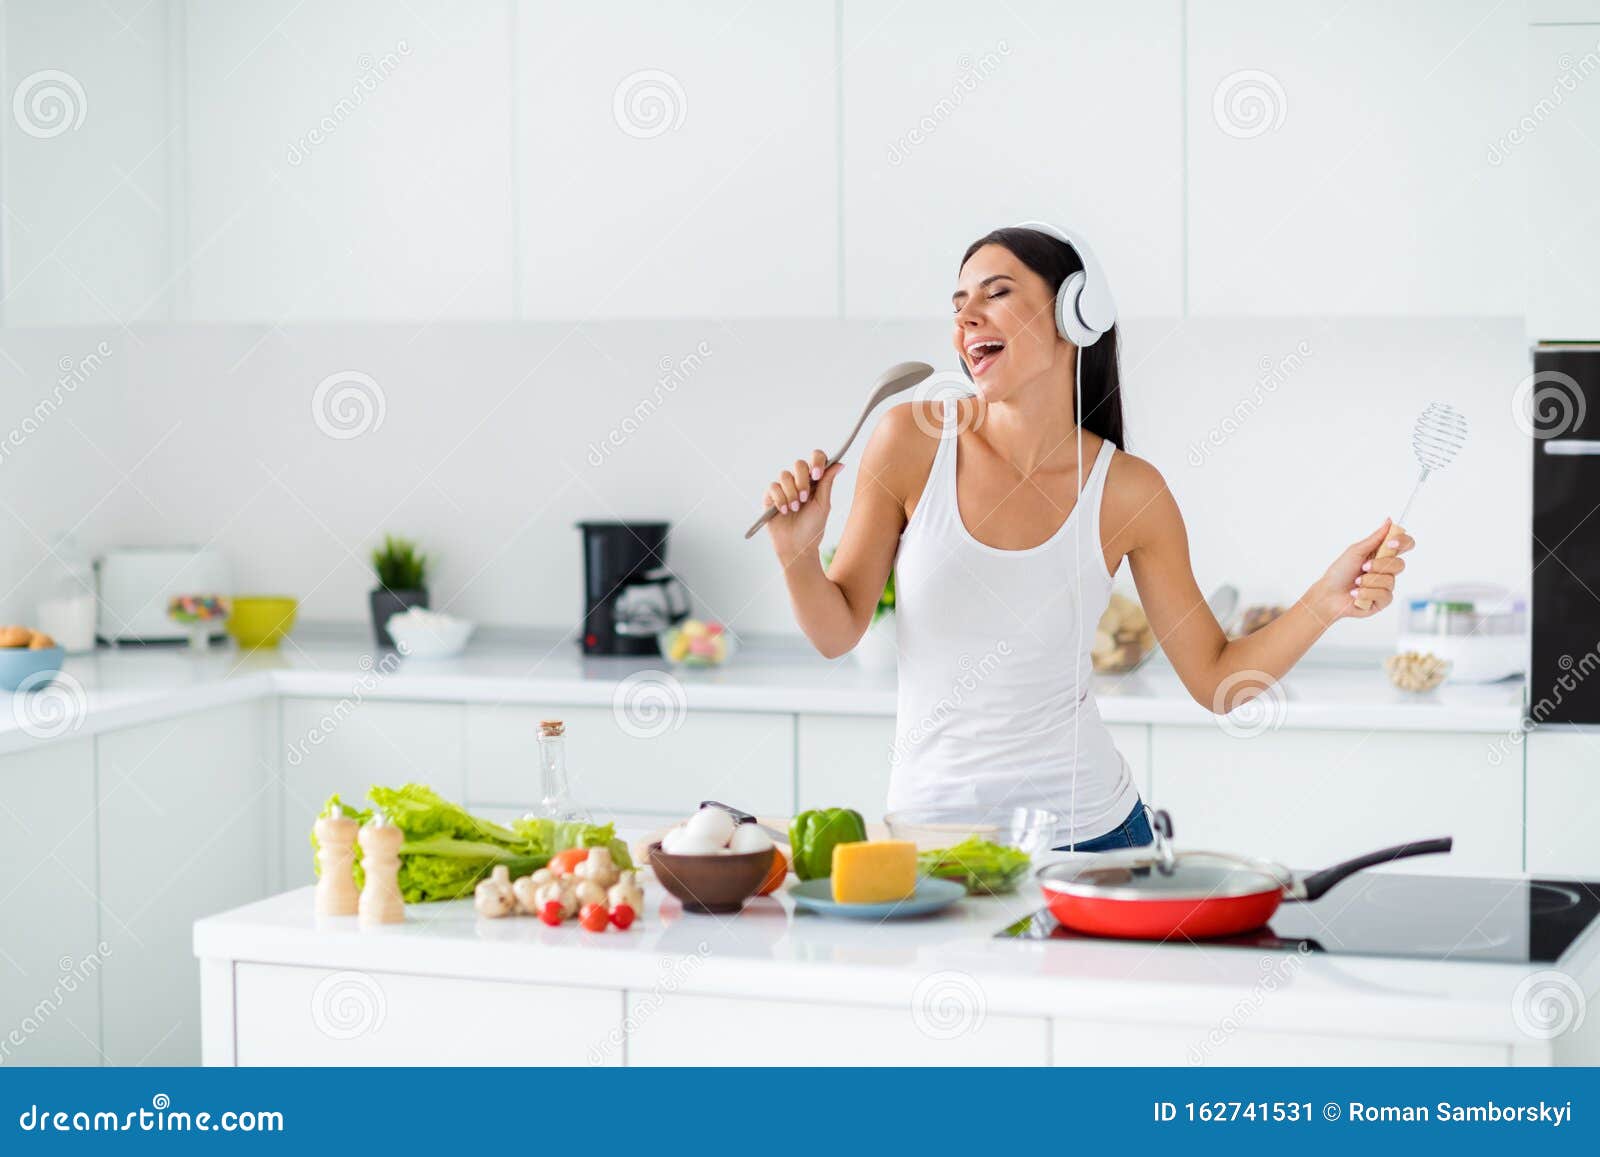 Поем на кухне песня. Пение на кухне. Женщина поет на кухне. Женщина в наушниках на кухне. Девушка поет на кухне.